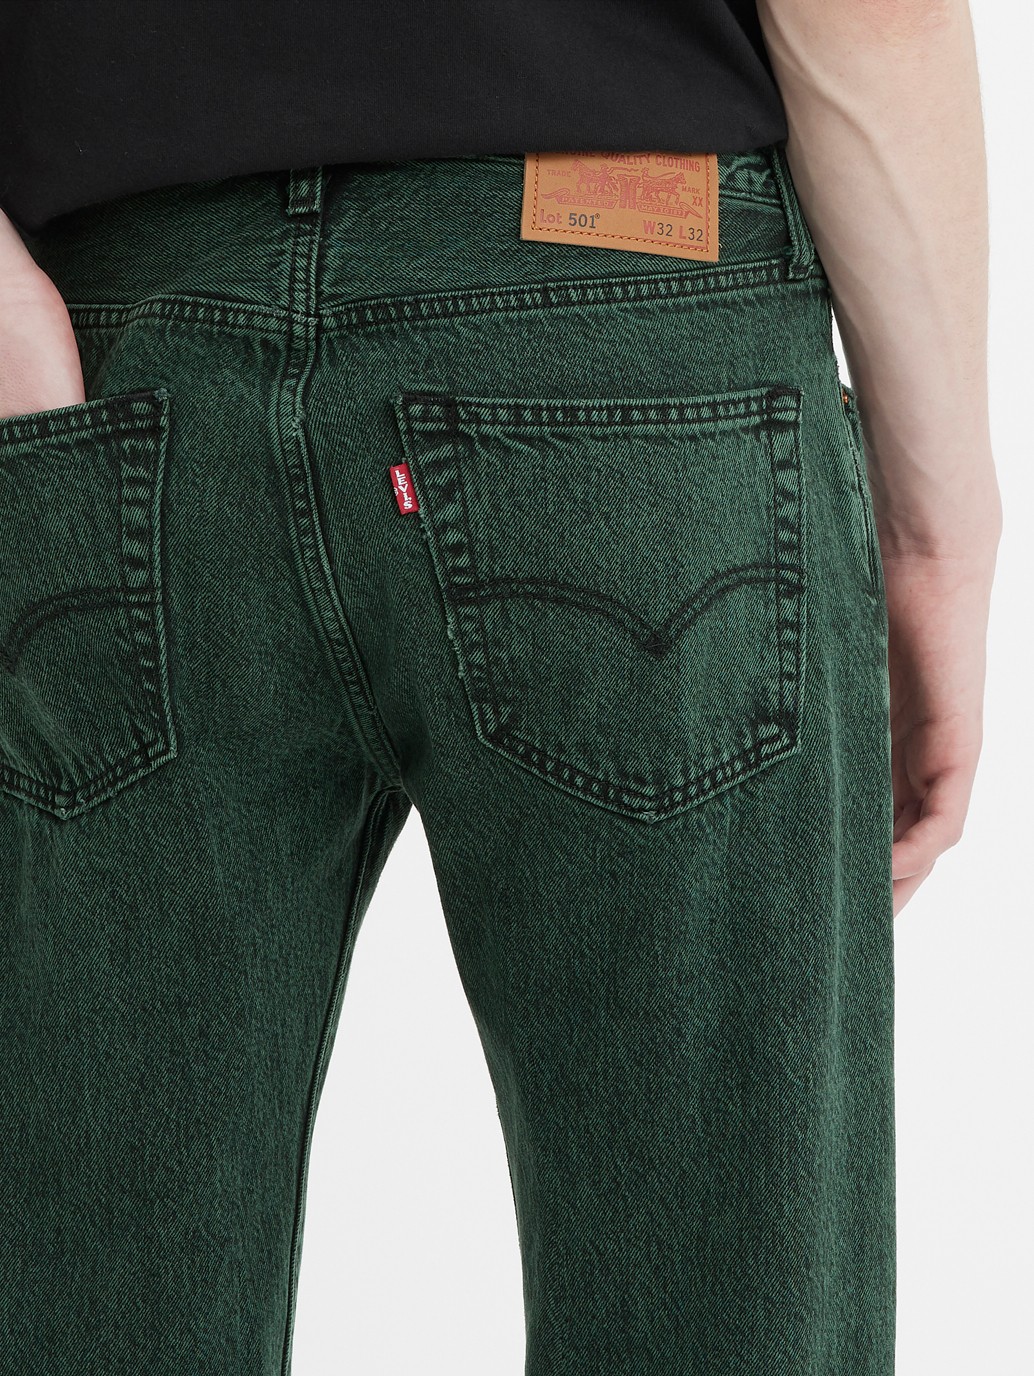 Buy Levi's® Men's 501® Original Transitional Cotton Jeans| Levi's